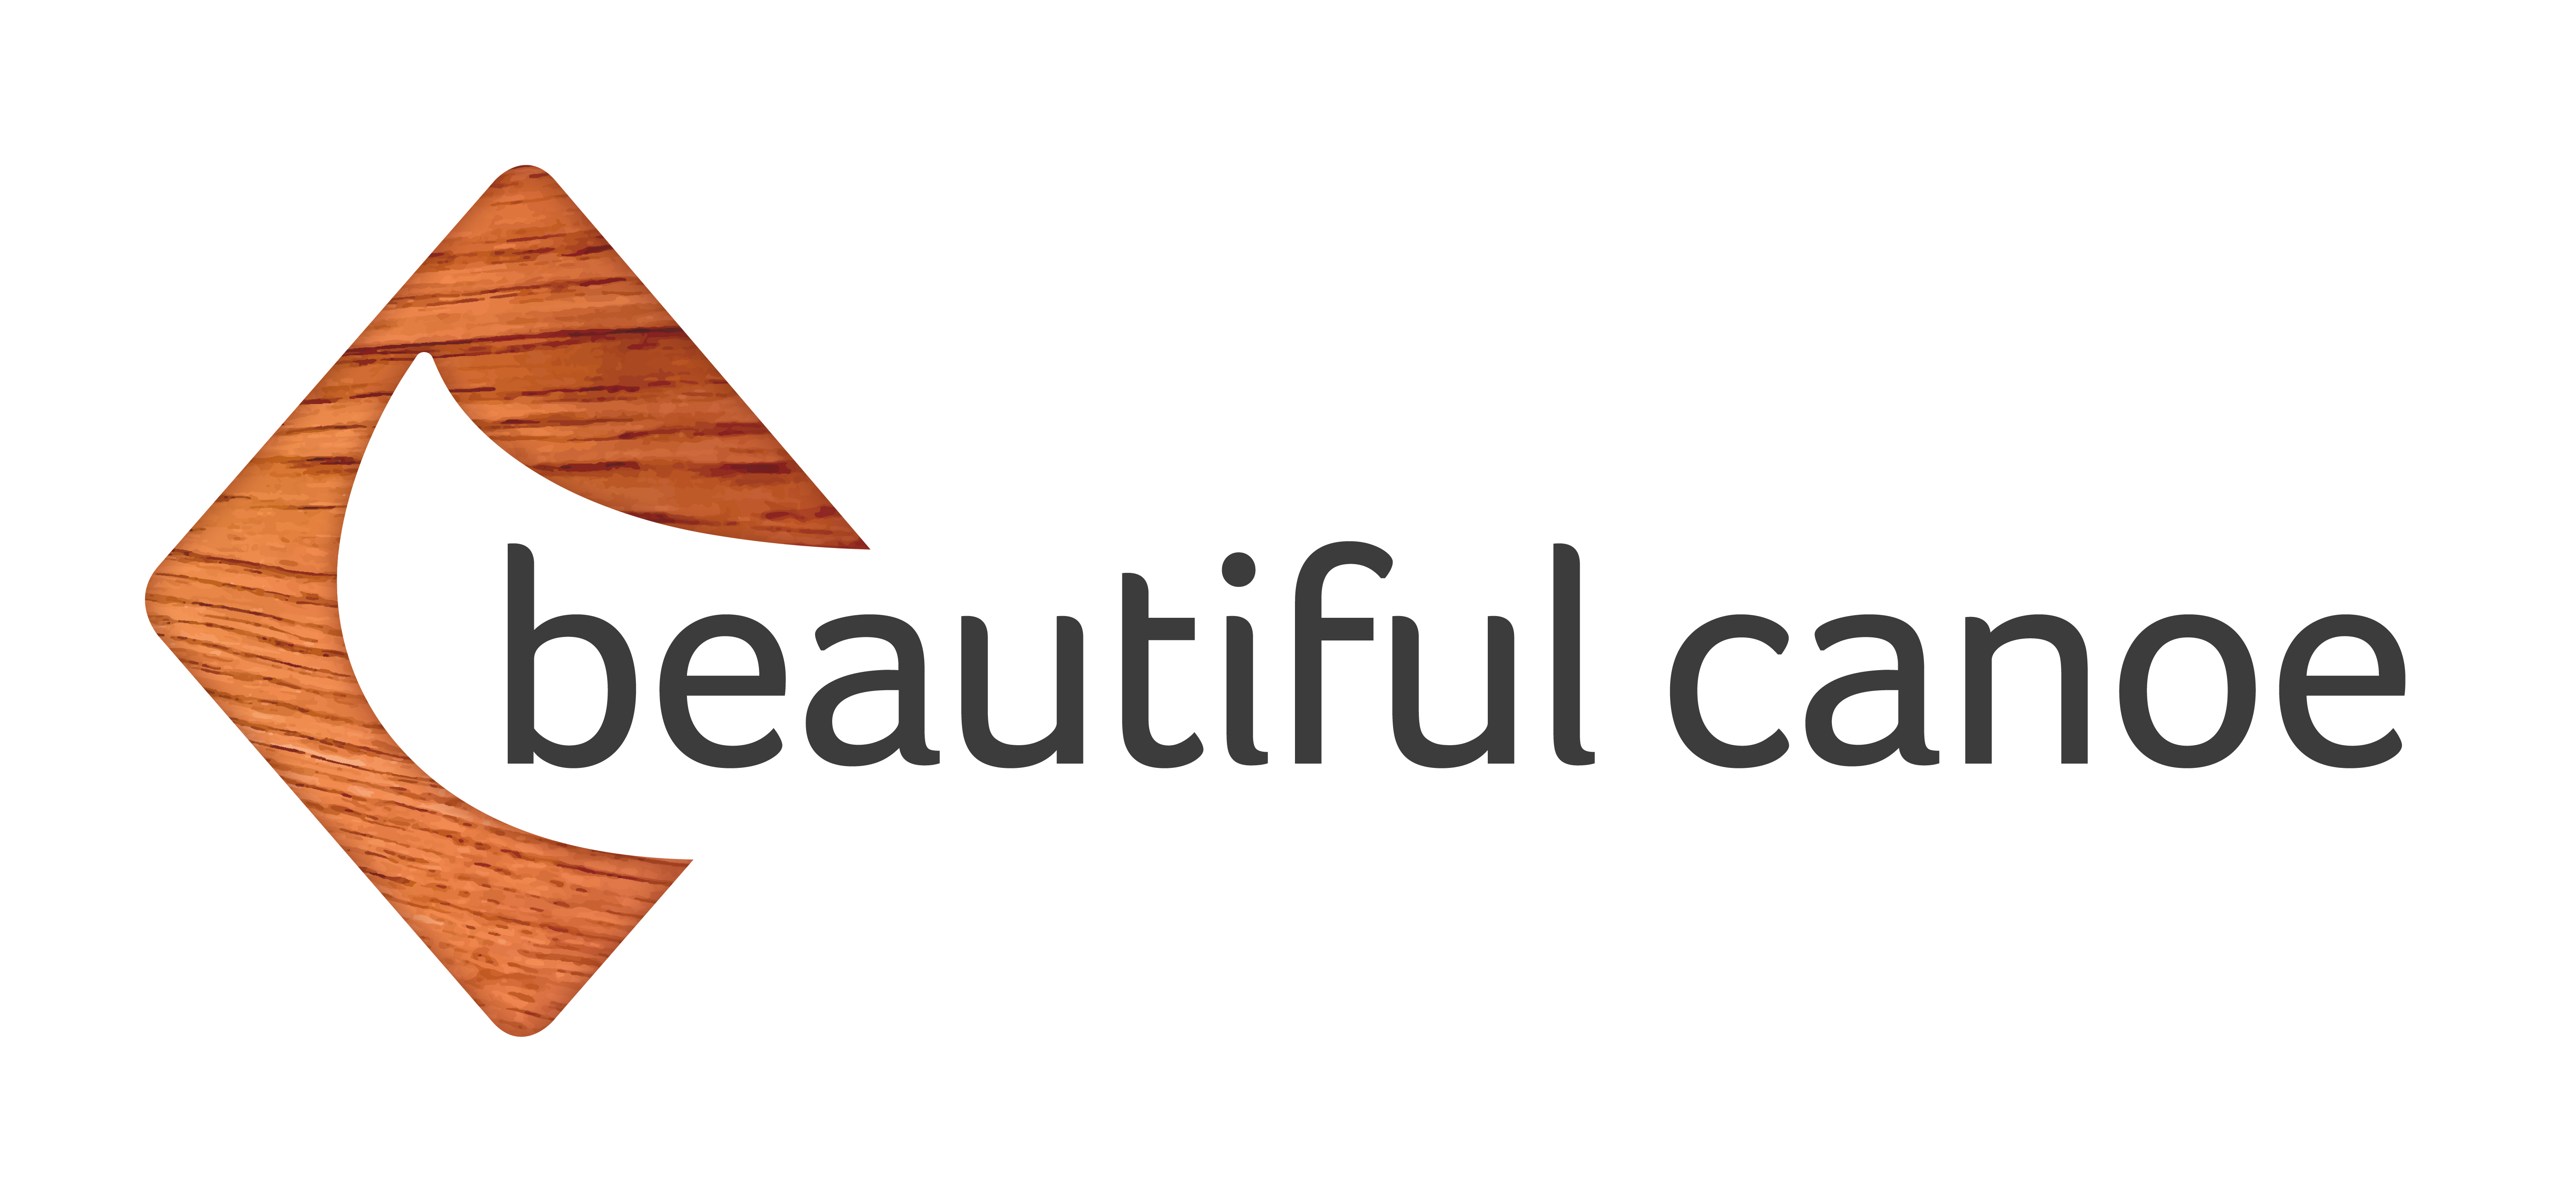 Beautiful Canoe logo with white background